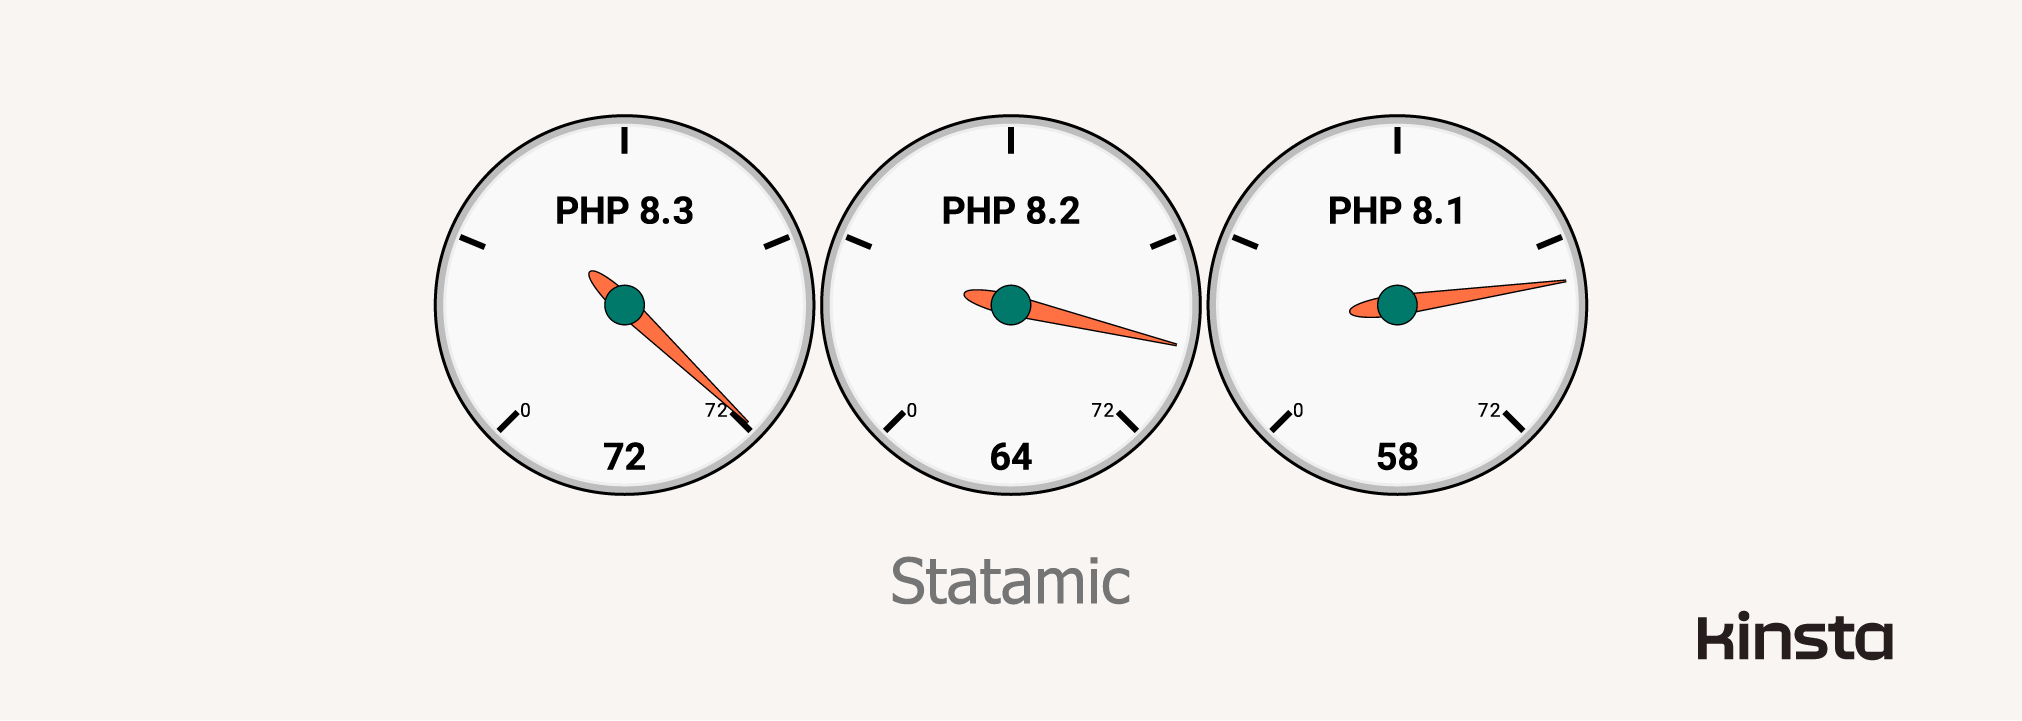 Leistung von Statamic 4.13.2 unter PHP 8.1, 8.2 und 8.3 (in Anfragen/Sekunde)